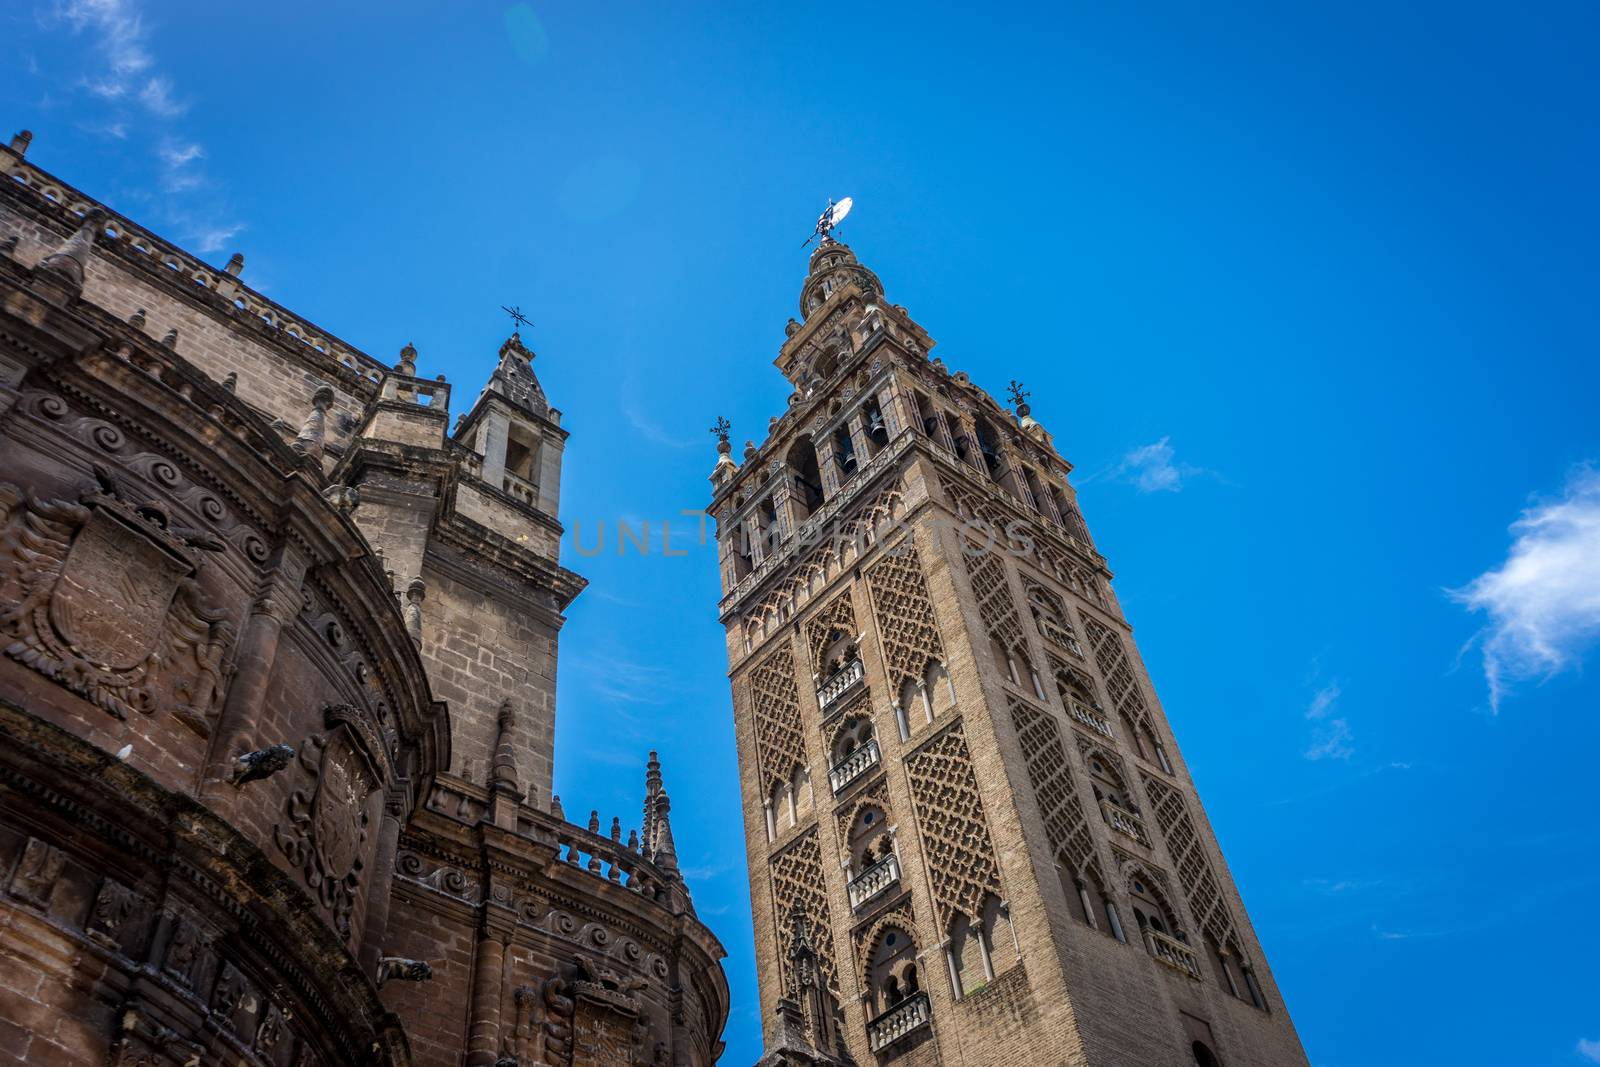 The Giralda Bell tower in Seville, Spain, Europe